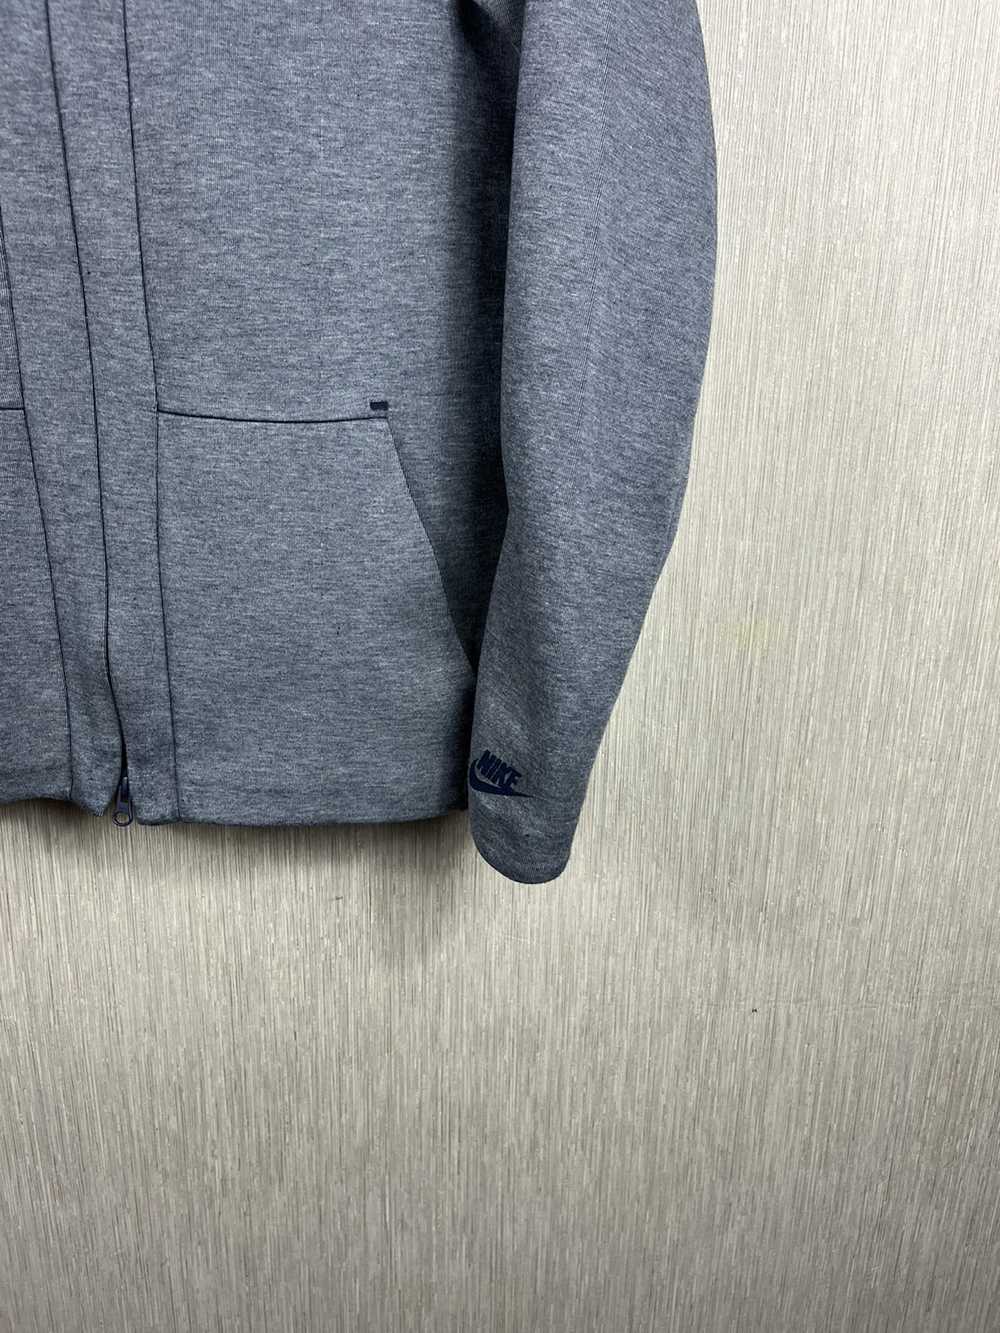 Hype × Nike × Streetwear Nike tech fleece jacket … - image 6